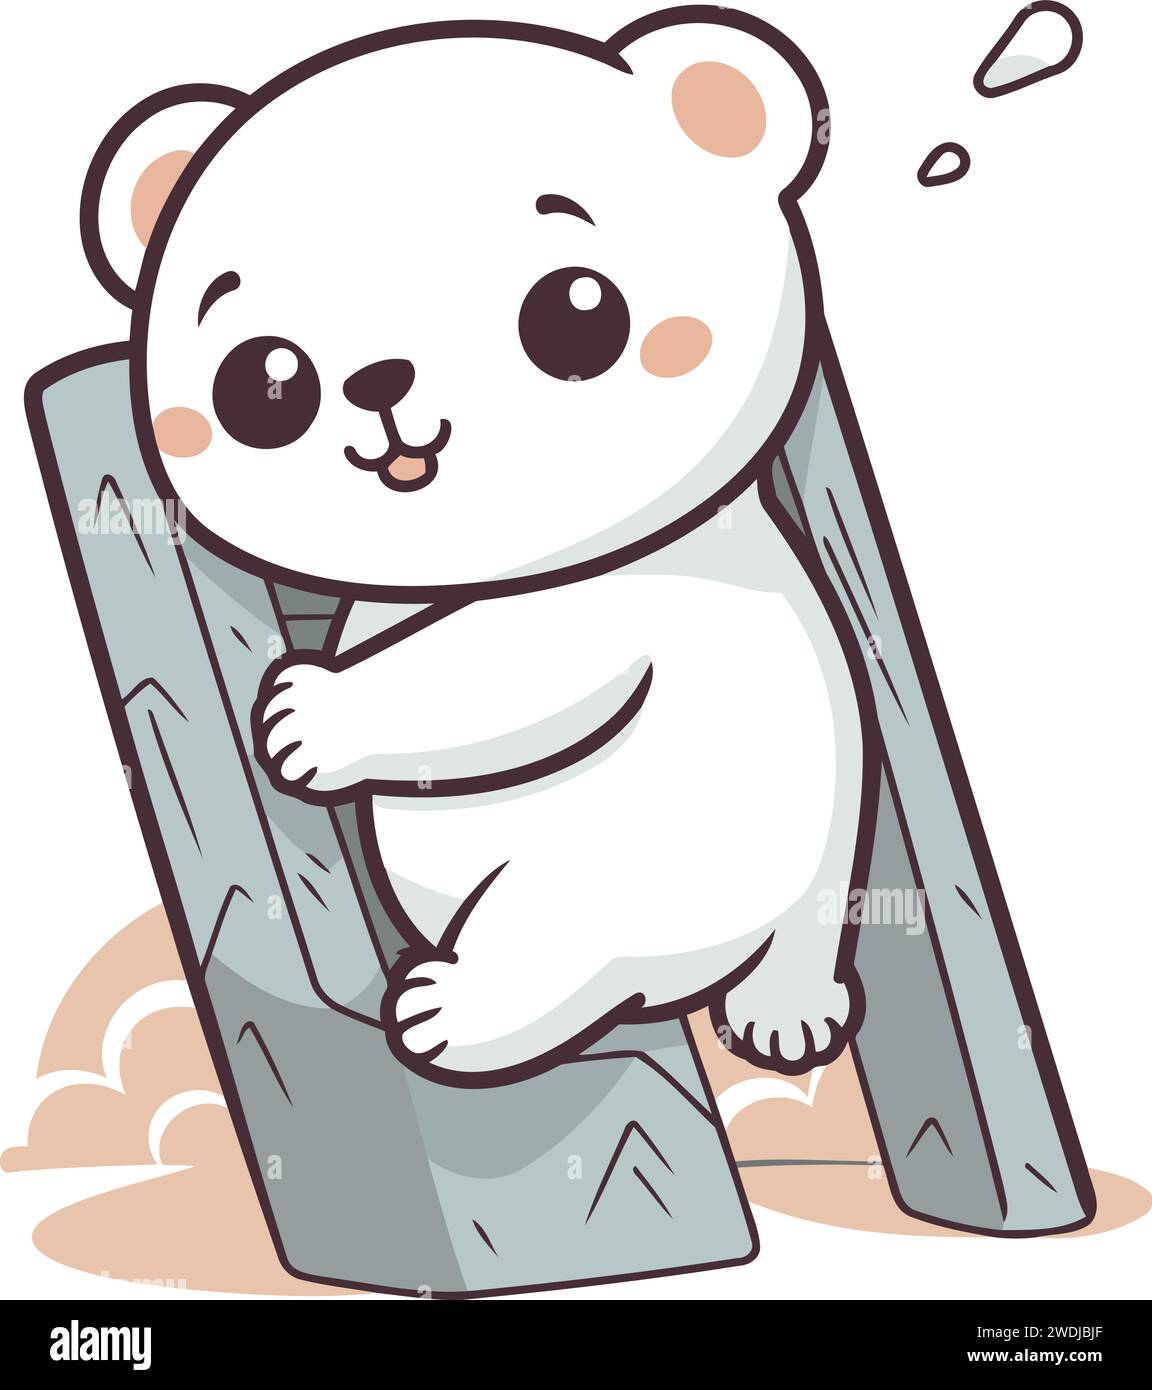 Eisbär sitzen auf hölzernen Brücken-Vektor-Illustration. Cartoon Eisbär sitzt auf einer Holzbrücke. Stock Vektor